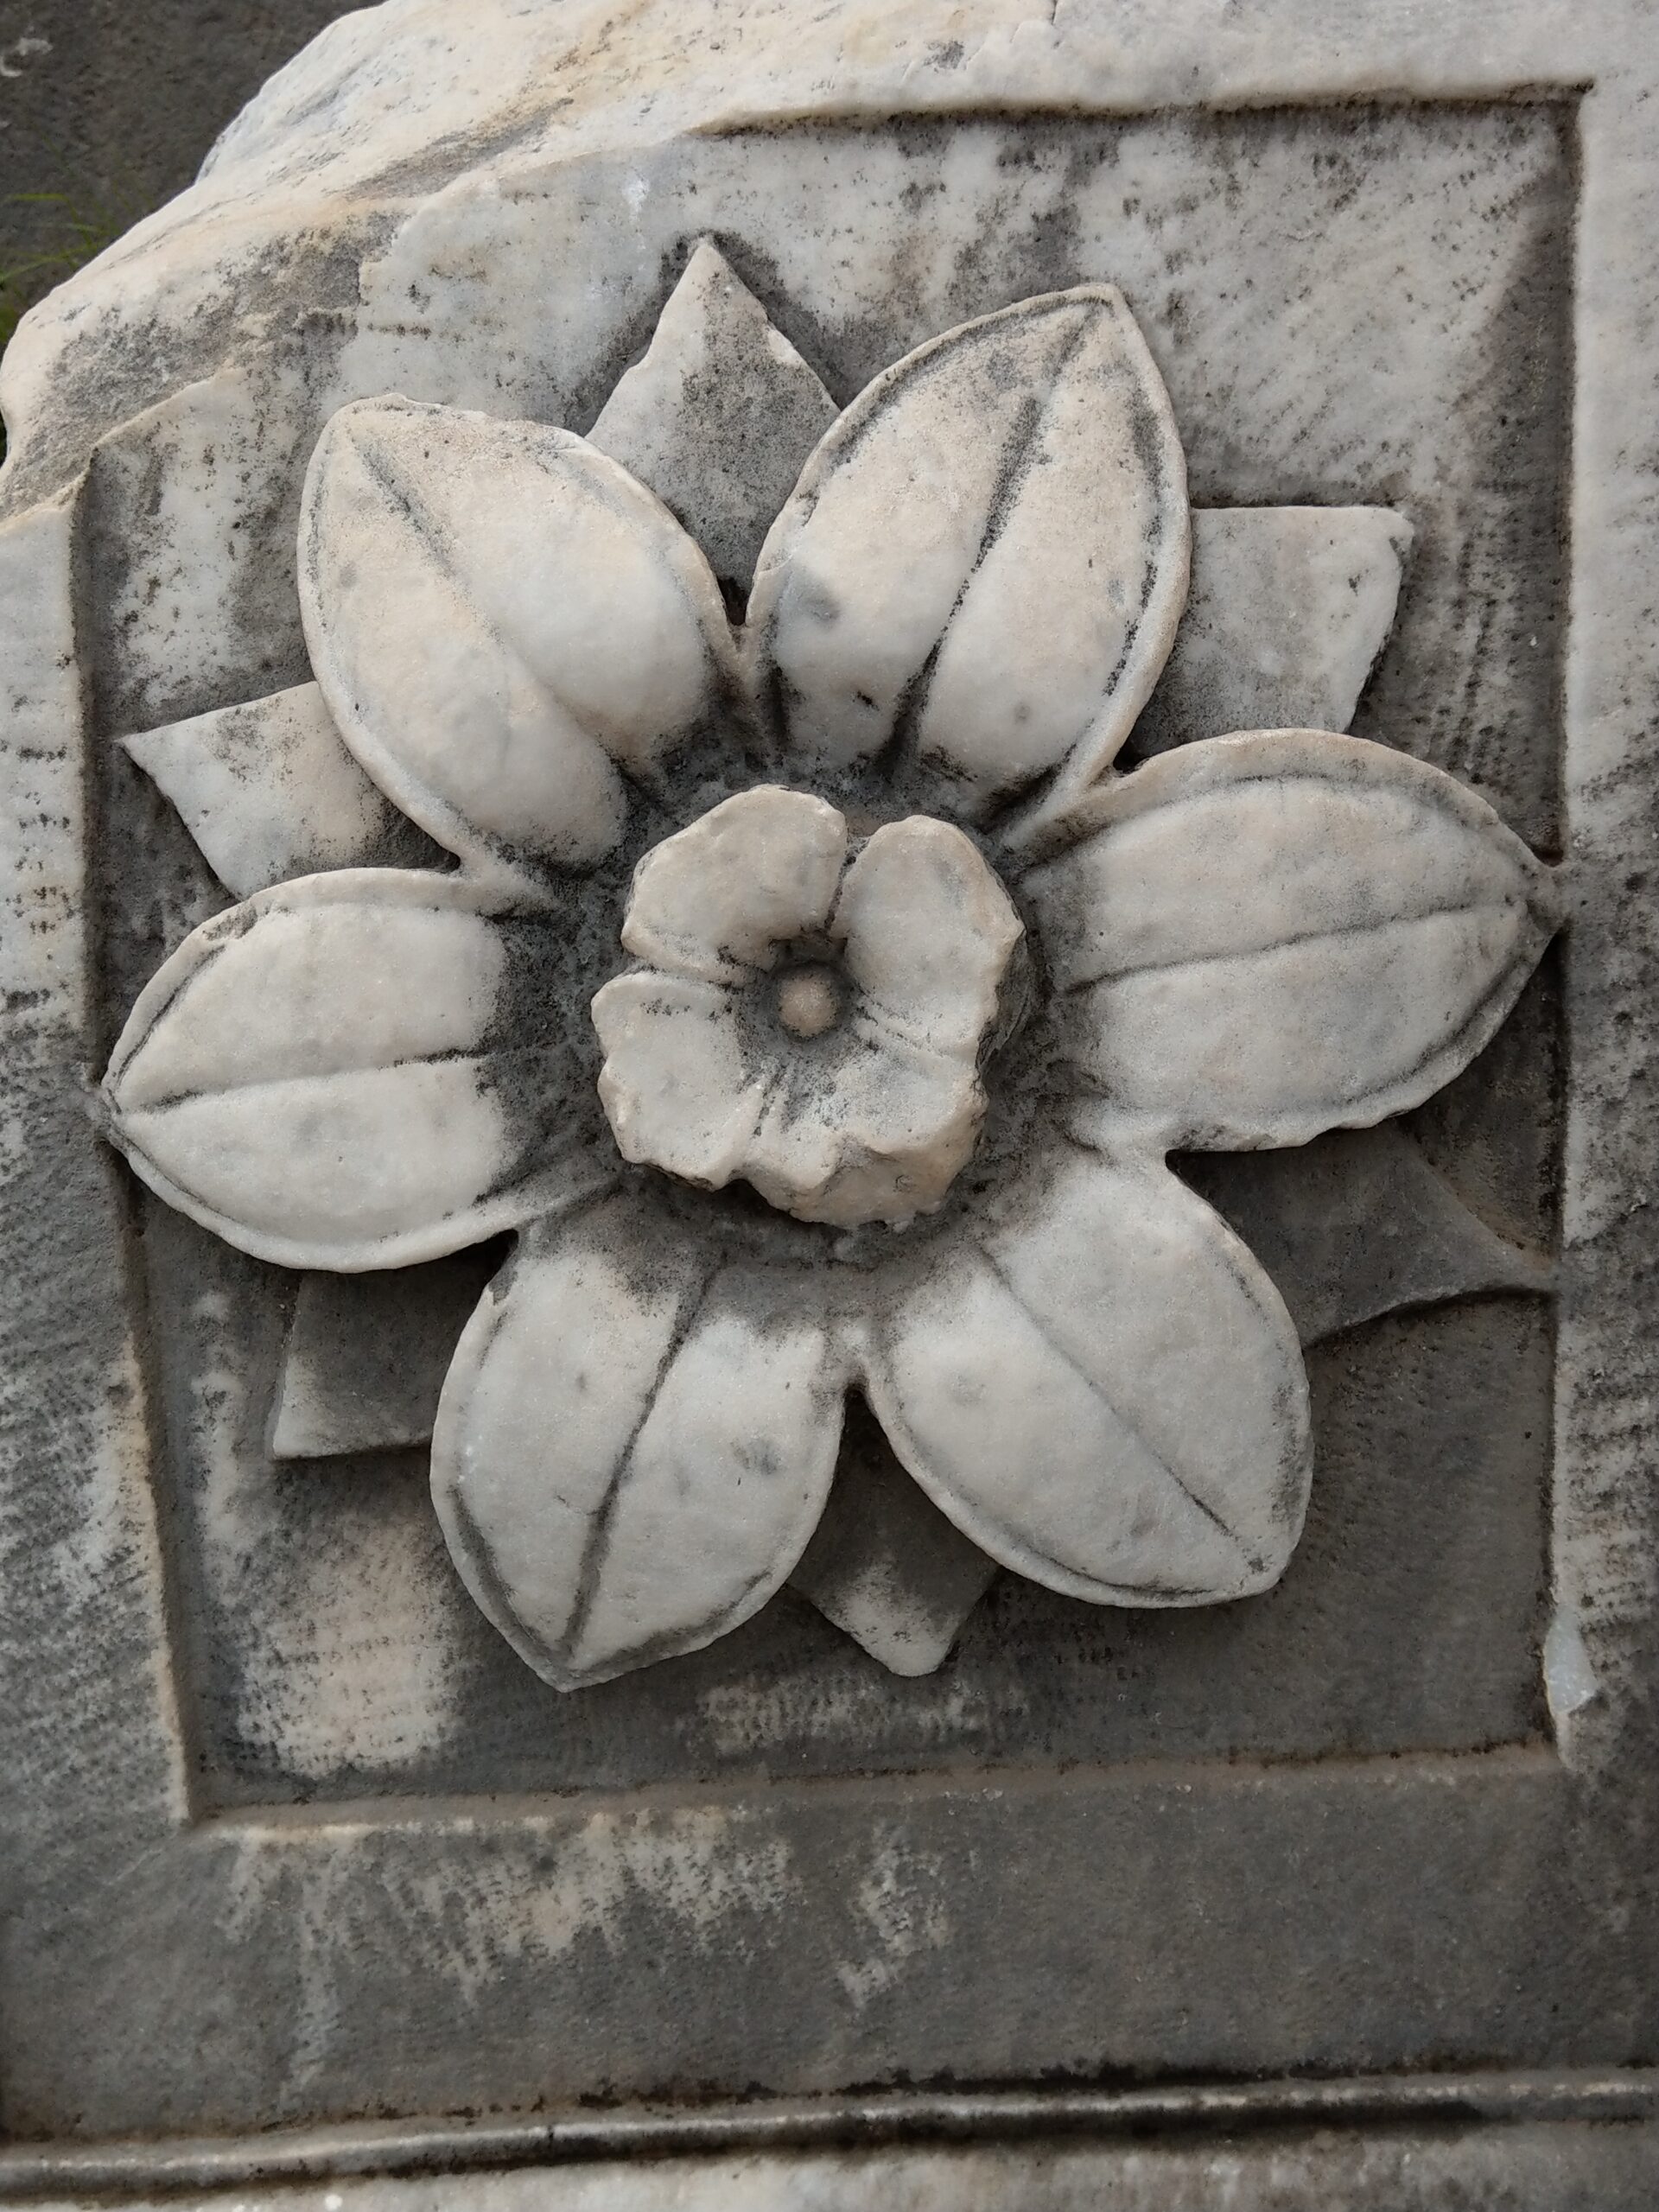 Blumenornament, diesen war etwa 30-40cm im Durchmesser und auf einem Bruchstück eines Quaders zu sehen.